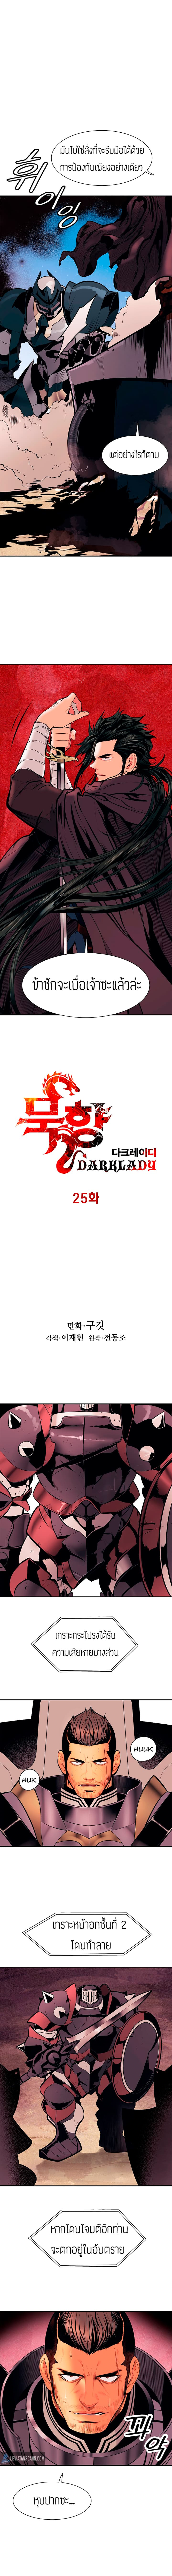 อ่านMookHyang - Dark Lady